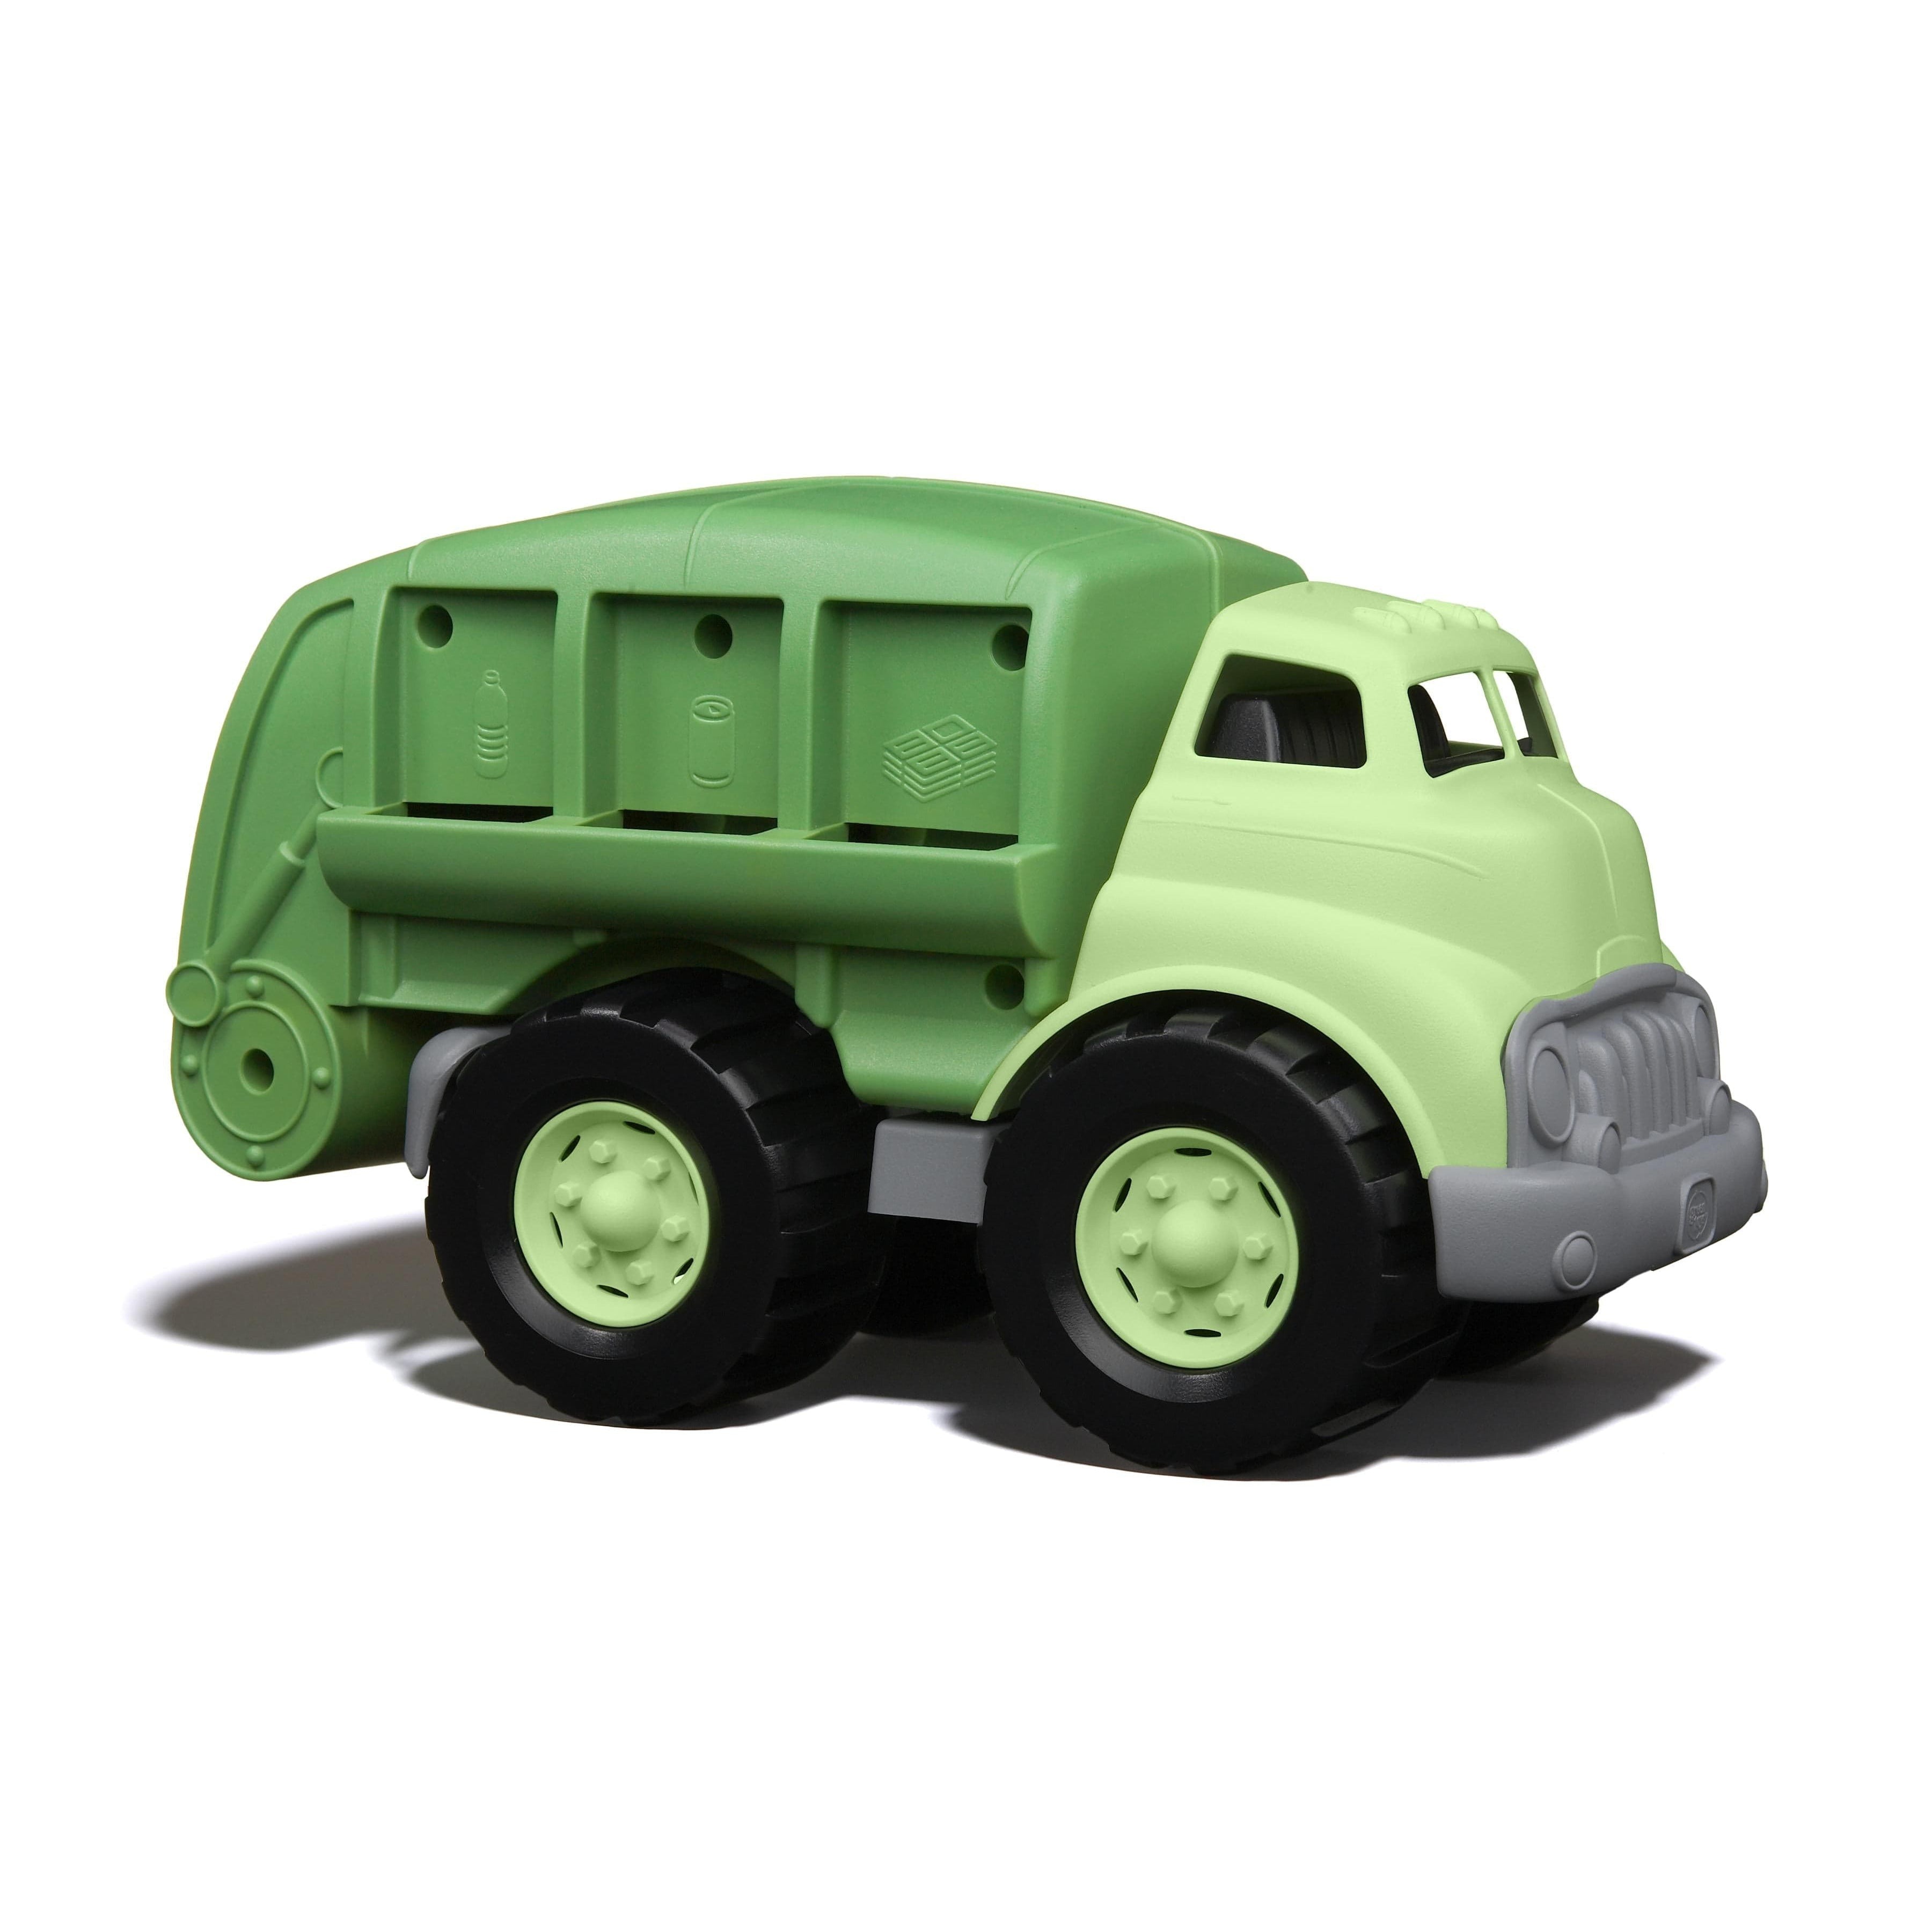 Мусоровоз зеленый. Машинки Green Toys мусоровоз. Мусоровоз recycle игрушка. Машинка самосвал гро1 Green Plast. Автомобиль самосвал Green Plast гр08.